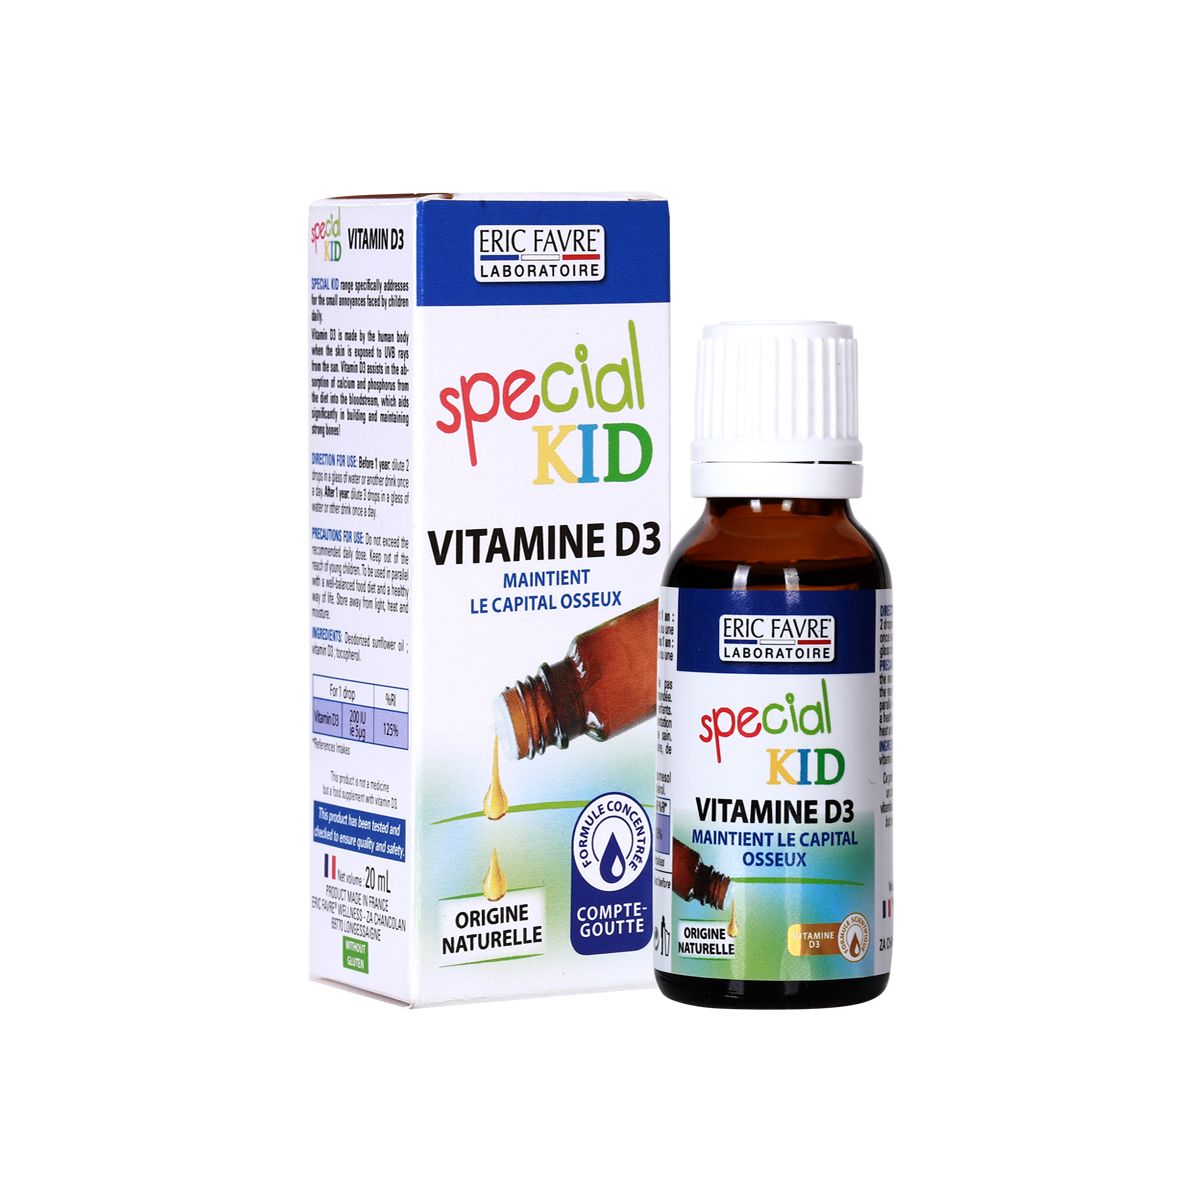  Special Kid Vitamine D3 - Xương răng chắc khỏe, cơ thể cứng cáp [Siro – Nhập khẩu Pháp] 